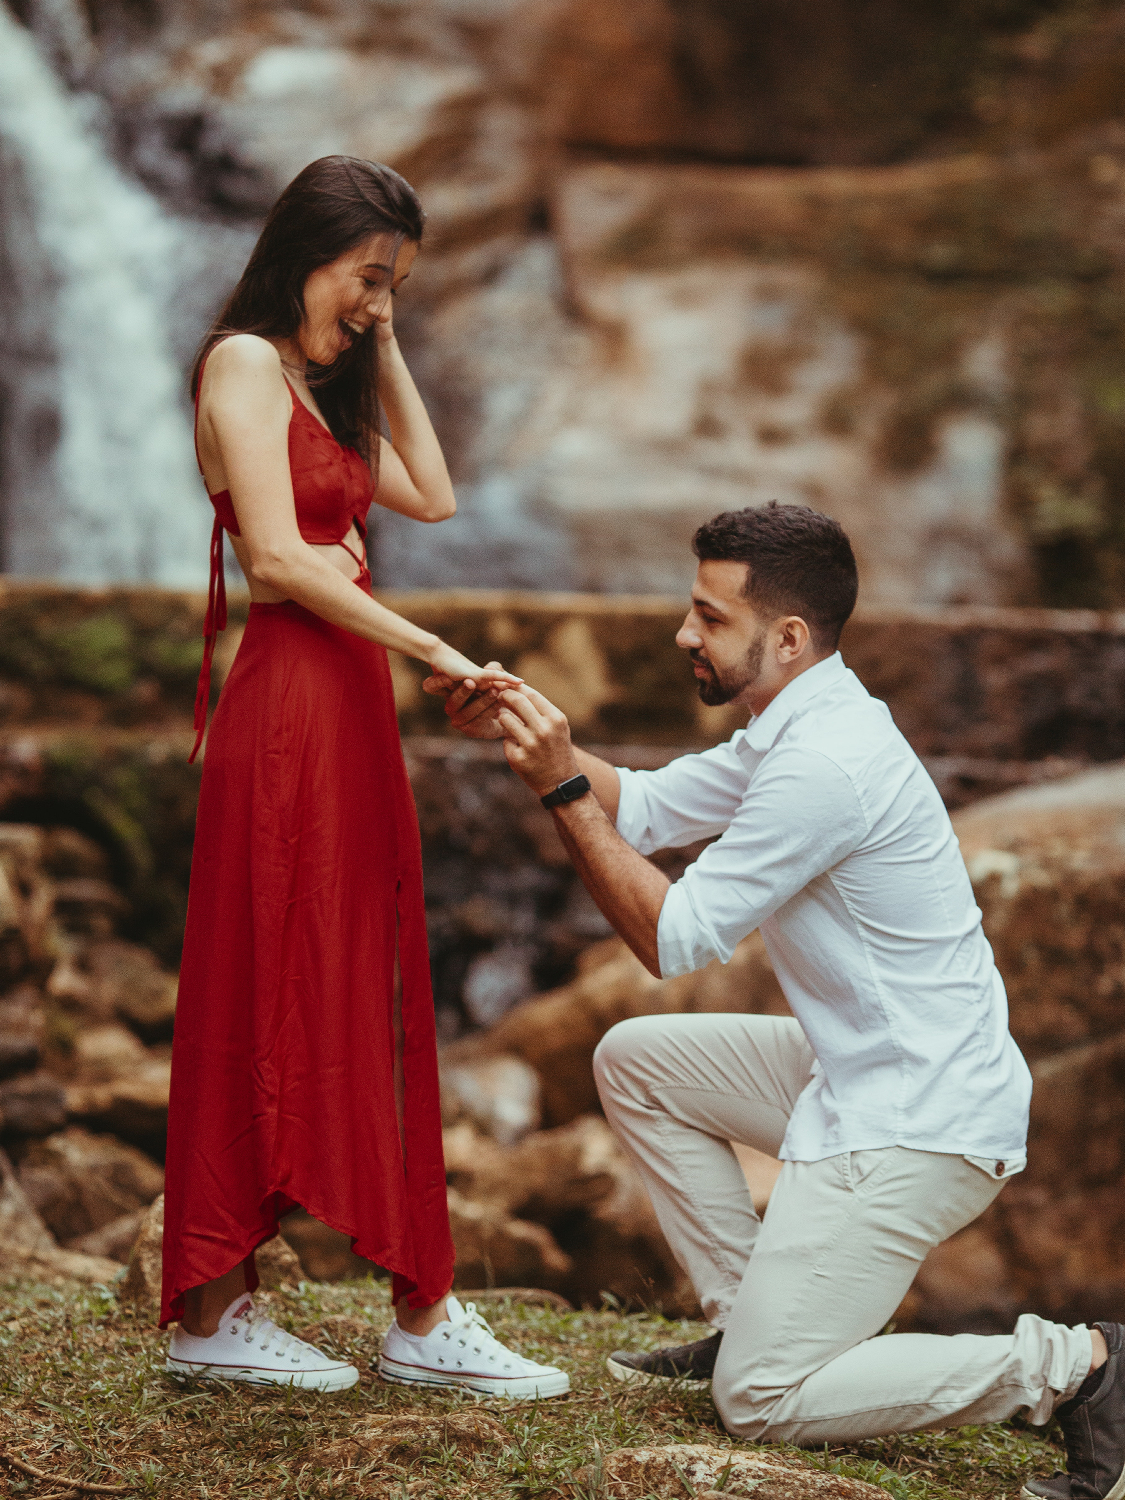 Mann macht Frau einen Hochzeitsantrag und gibt ihr einen Verlobungsring - Momente des Schenkes | Emotionsbild